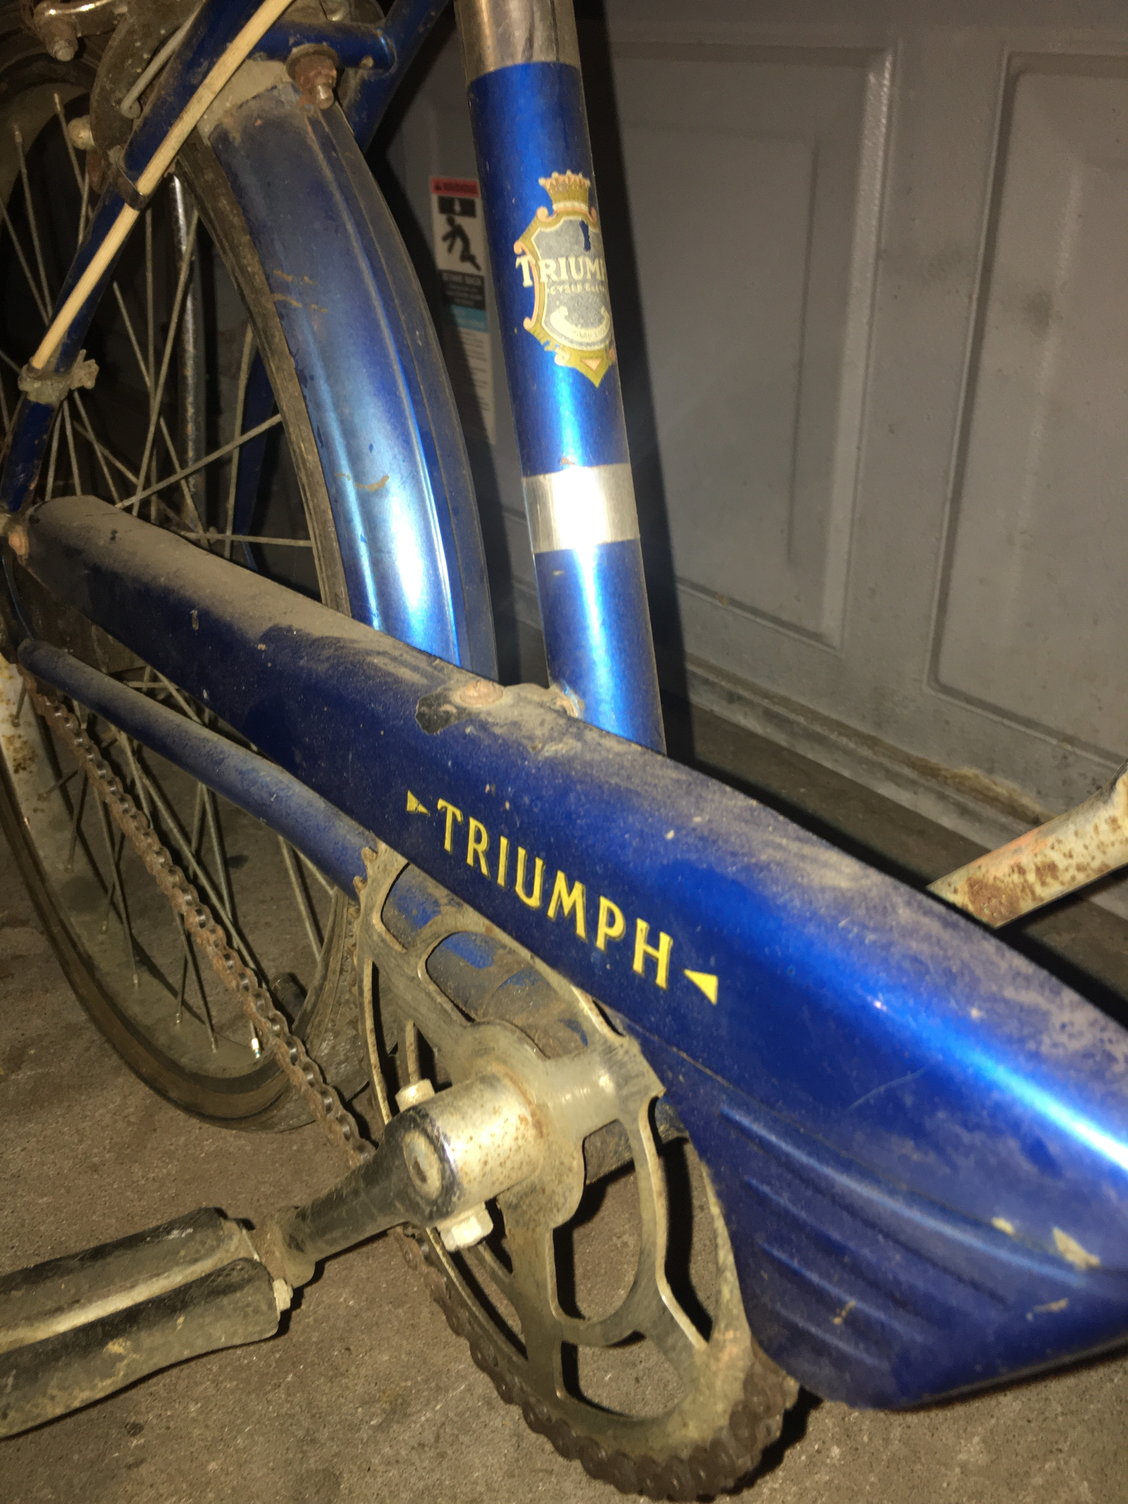 raleigh triumph bike